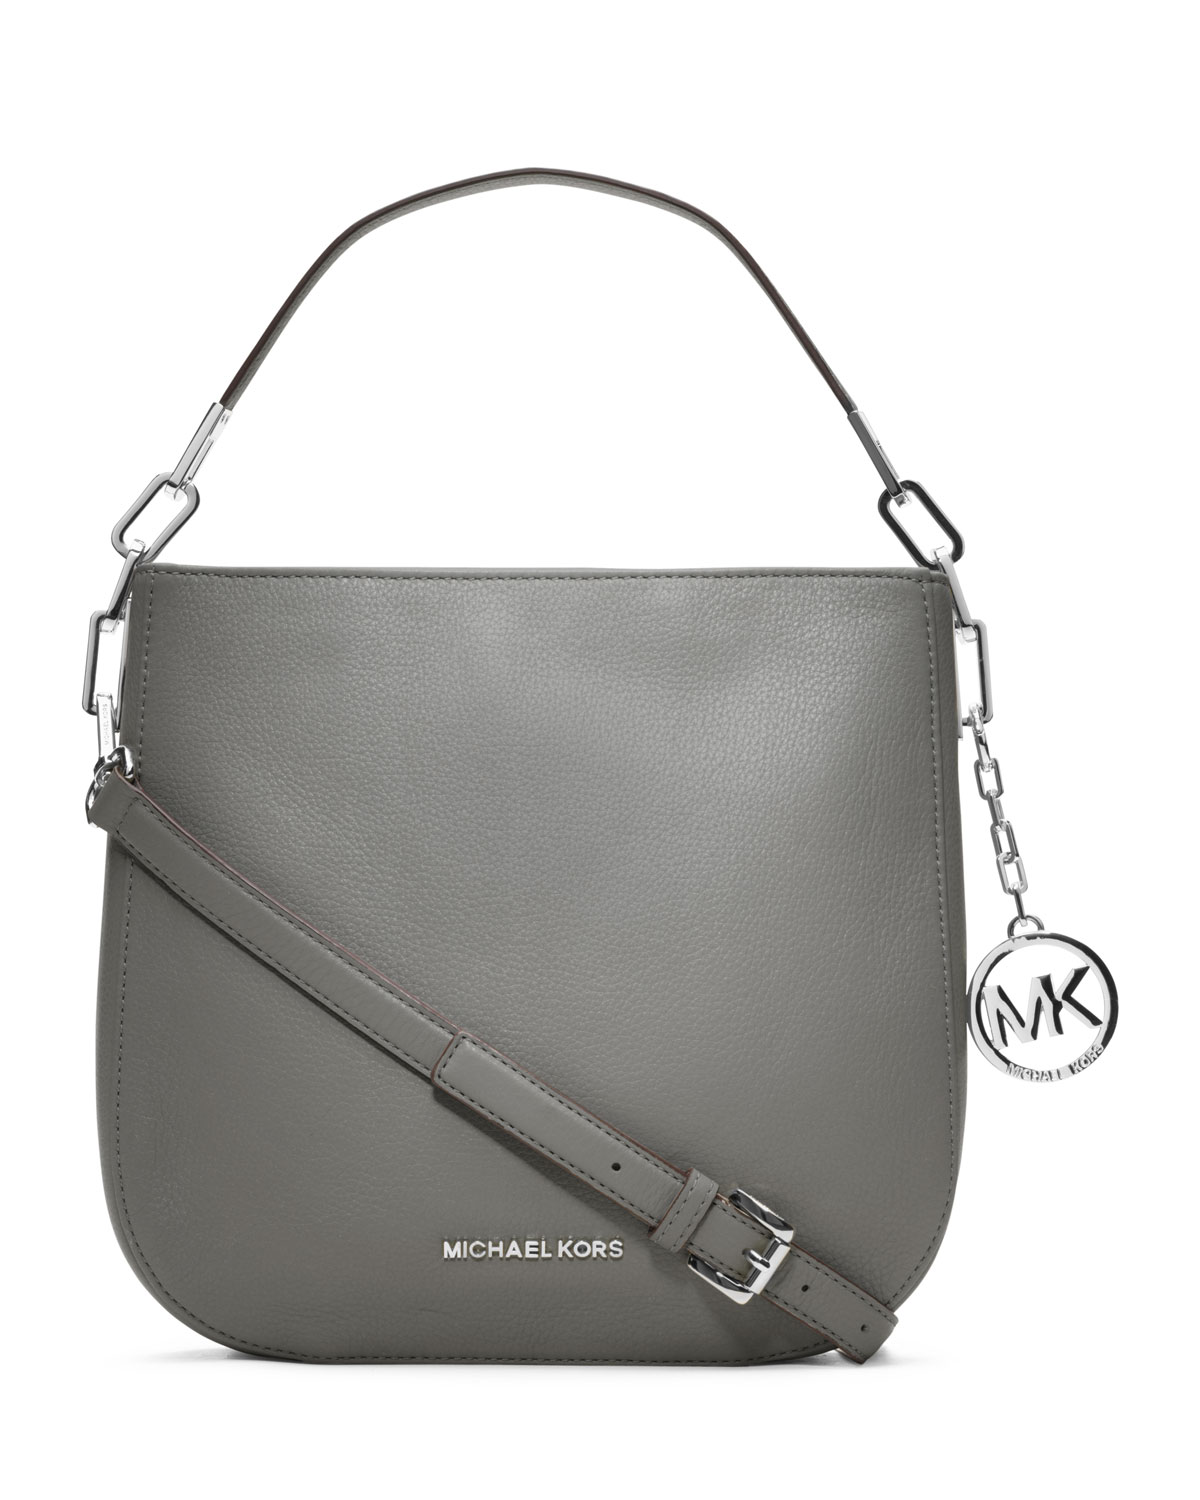 Lyst - Michael Kors Michael Medium Brooke Shoulder Bag in Gray